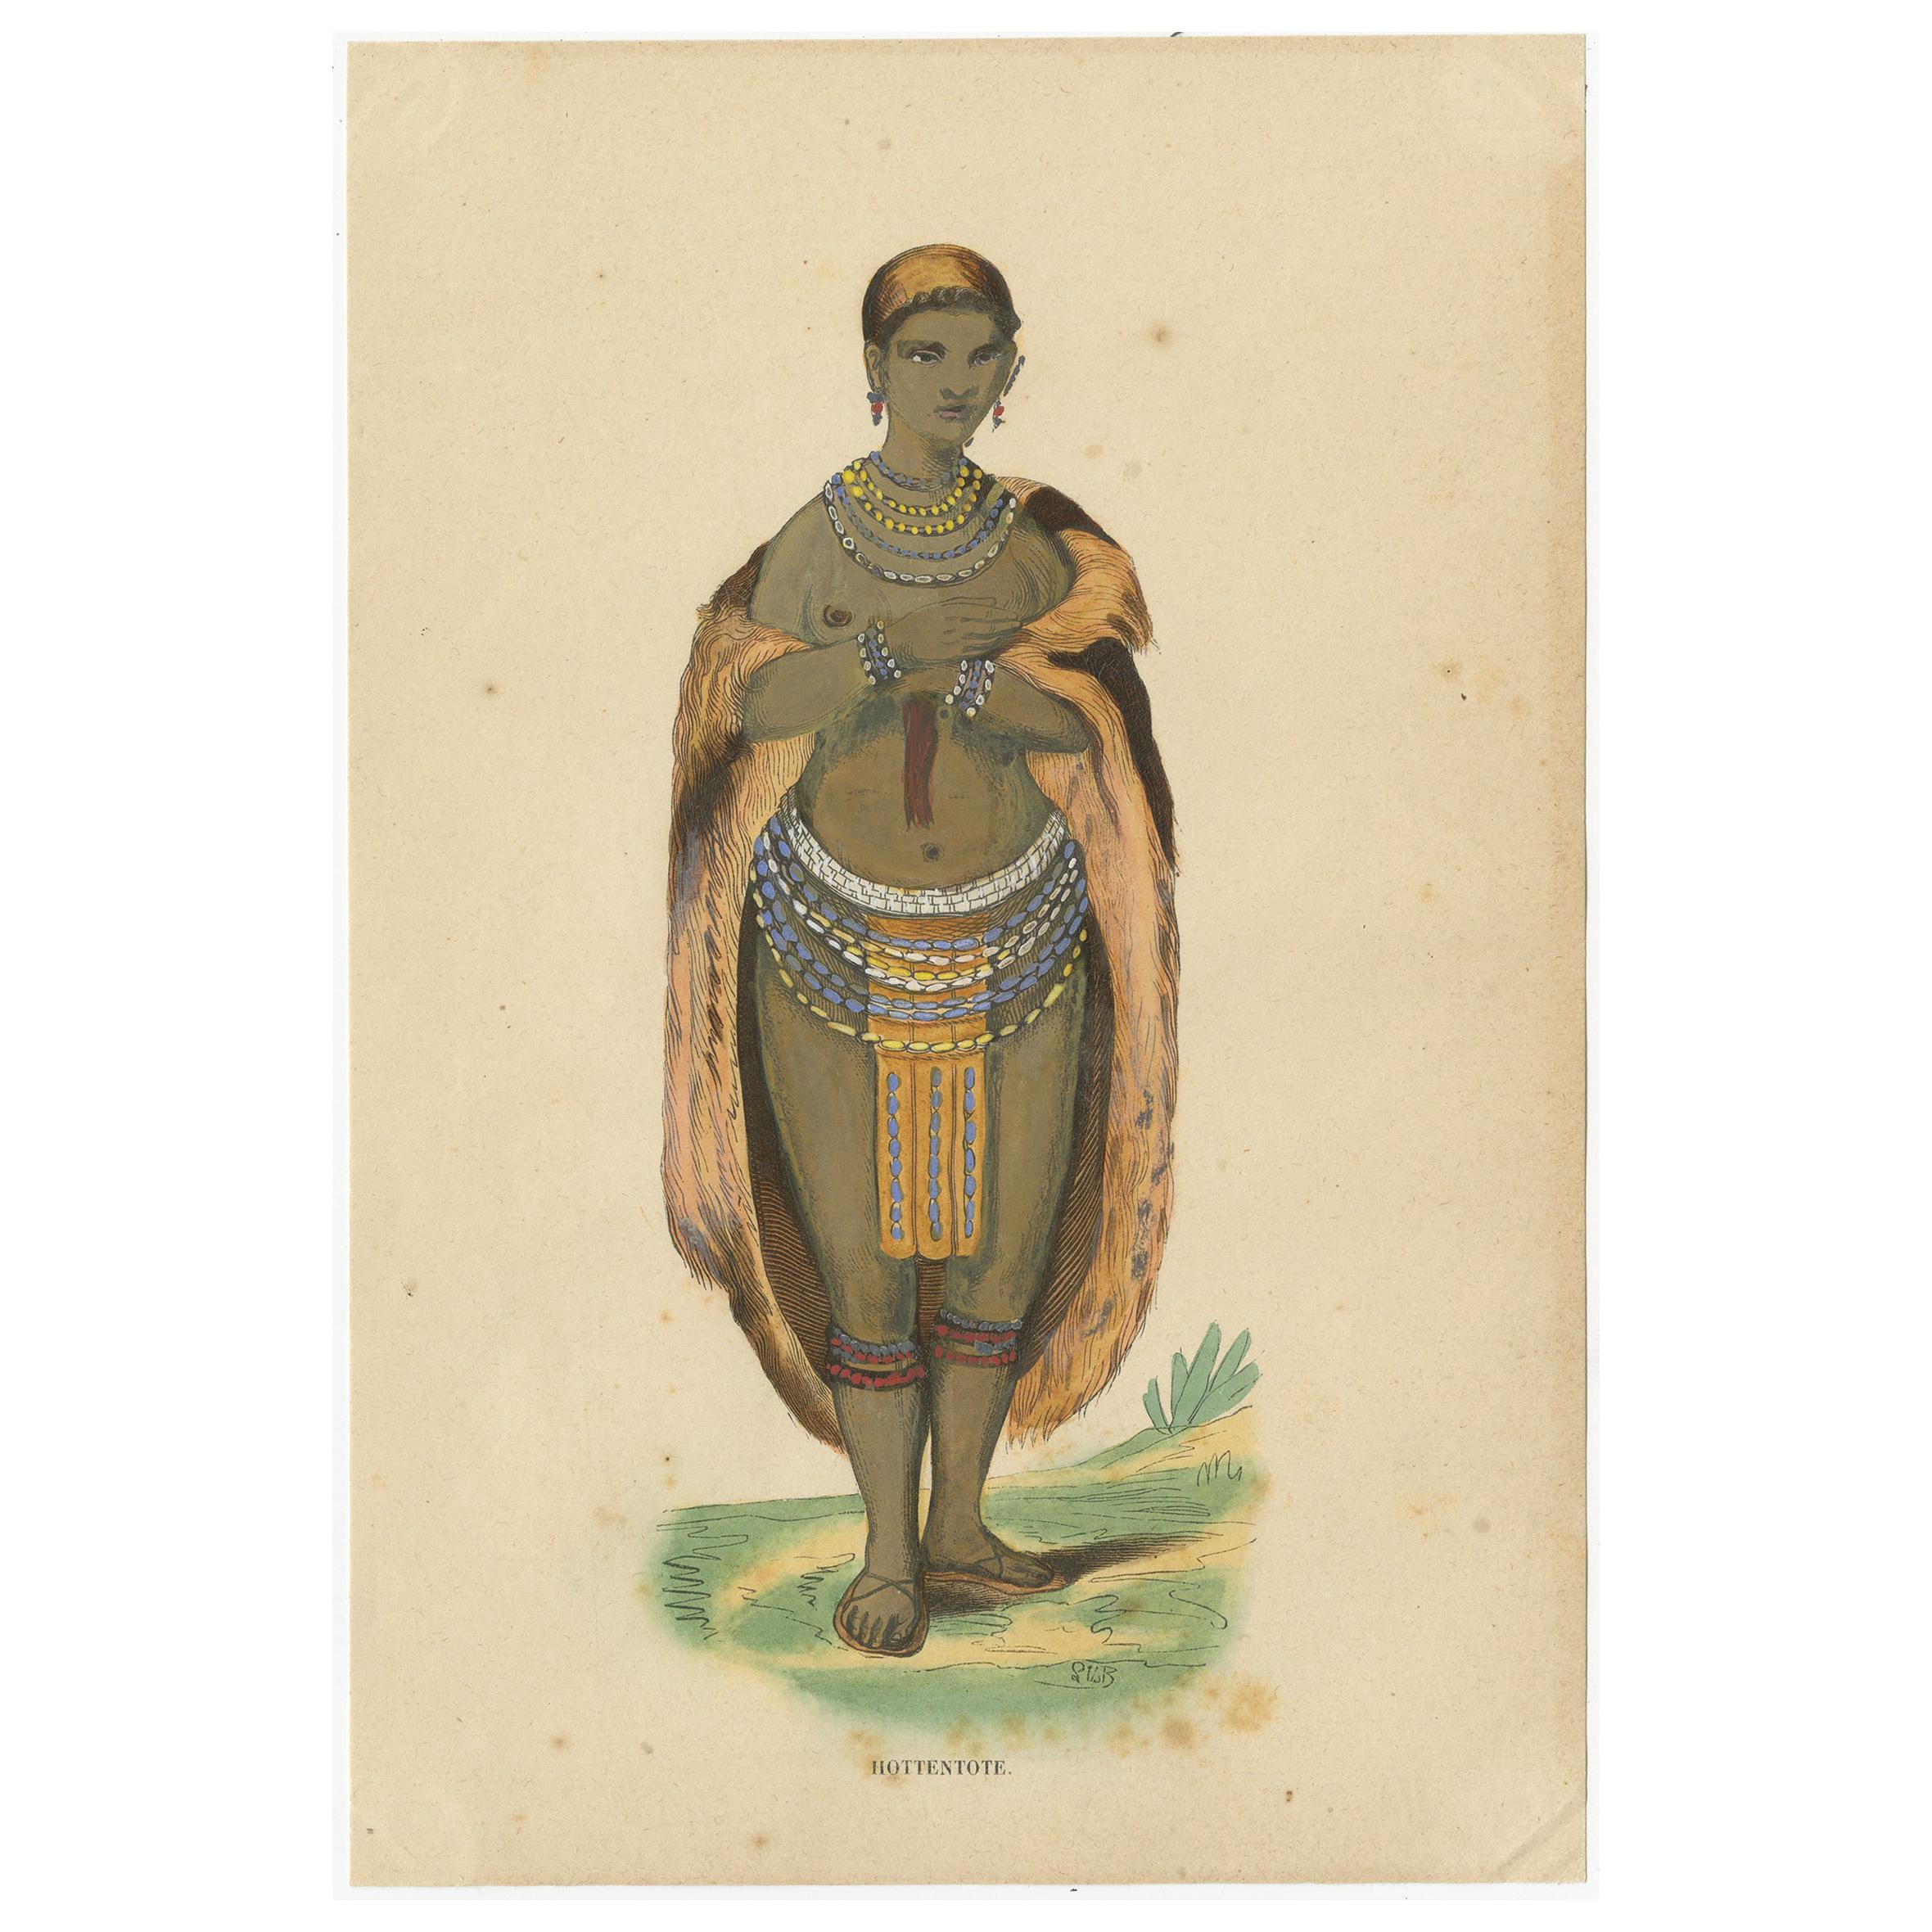 Impression de costume ancien d'une femme Khoikhoi par Wahlen, 1843